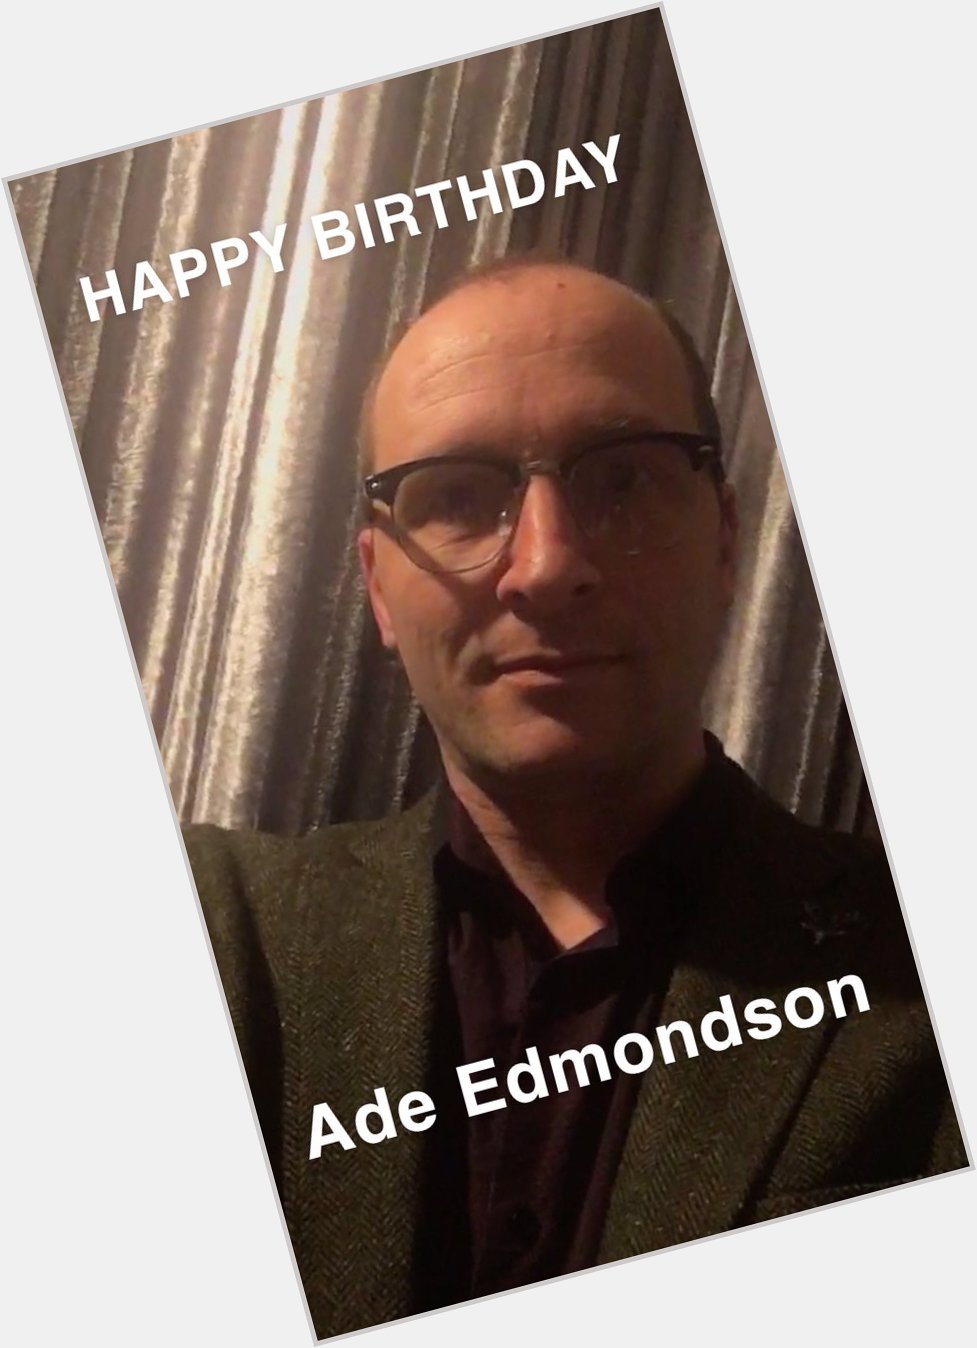 Happy birthday Ade Edmondson   